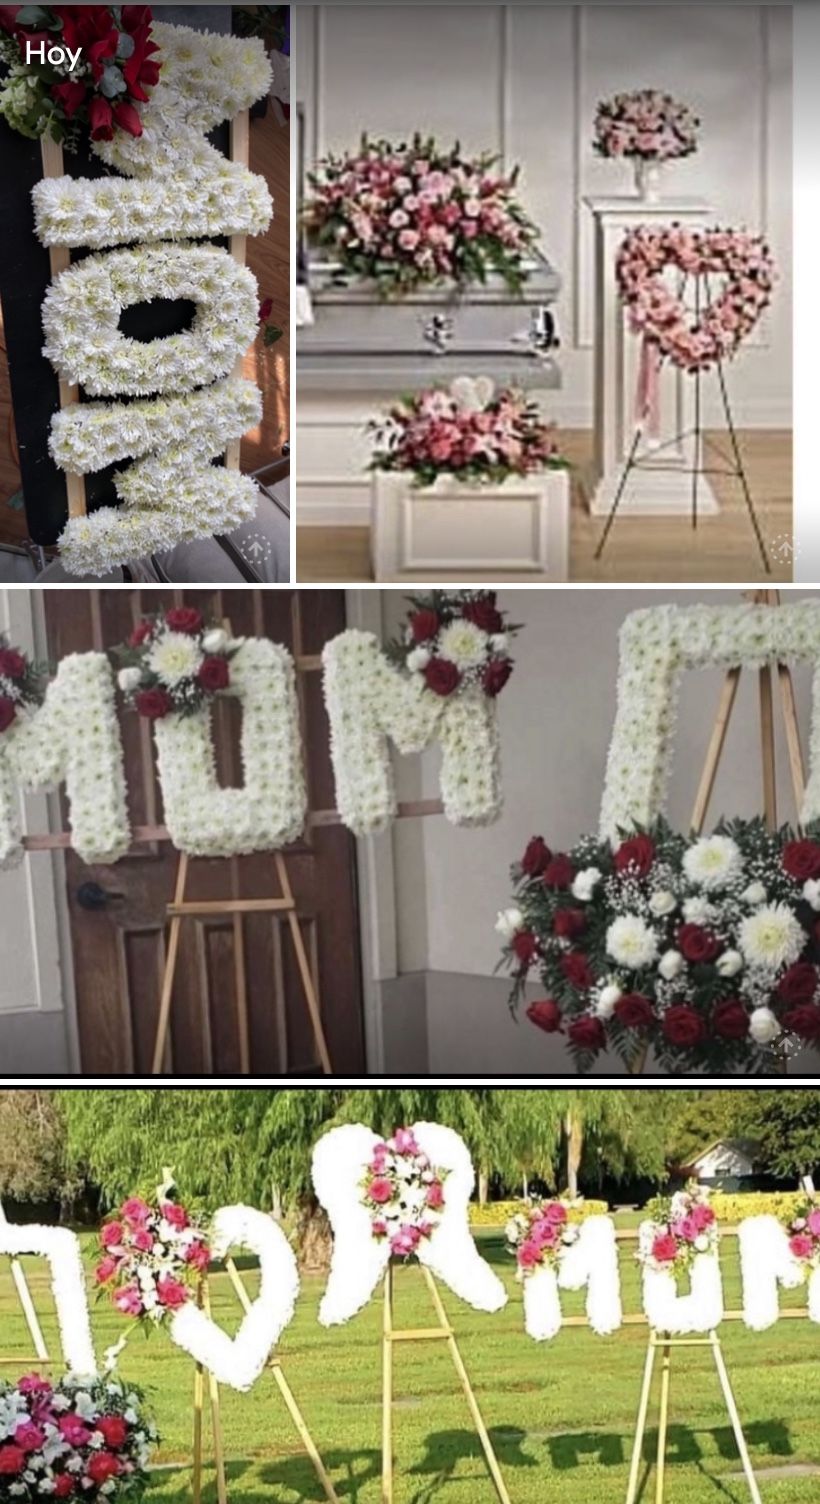 Funeral Arrangements/Wreath 